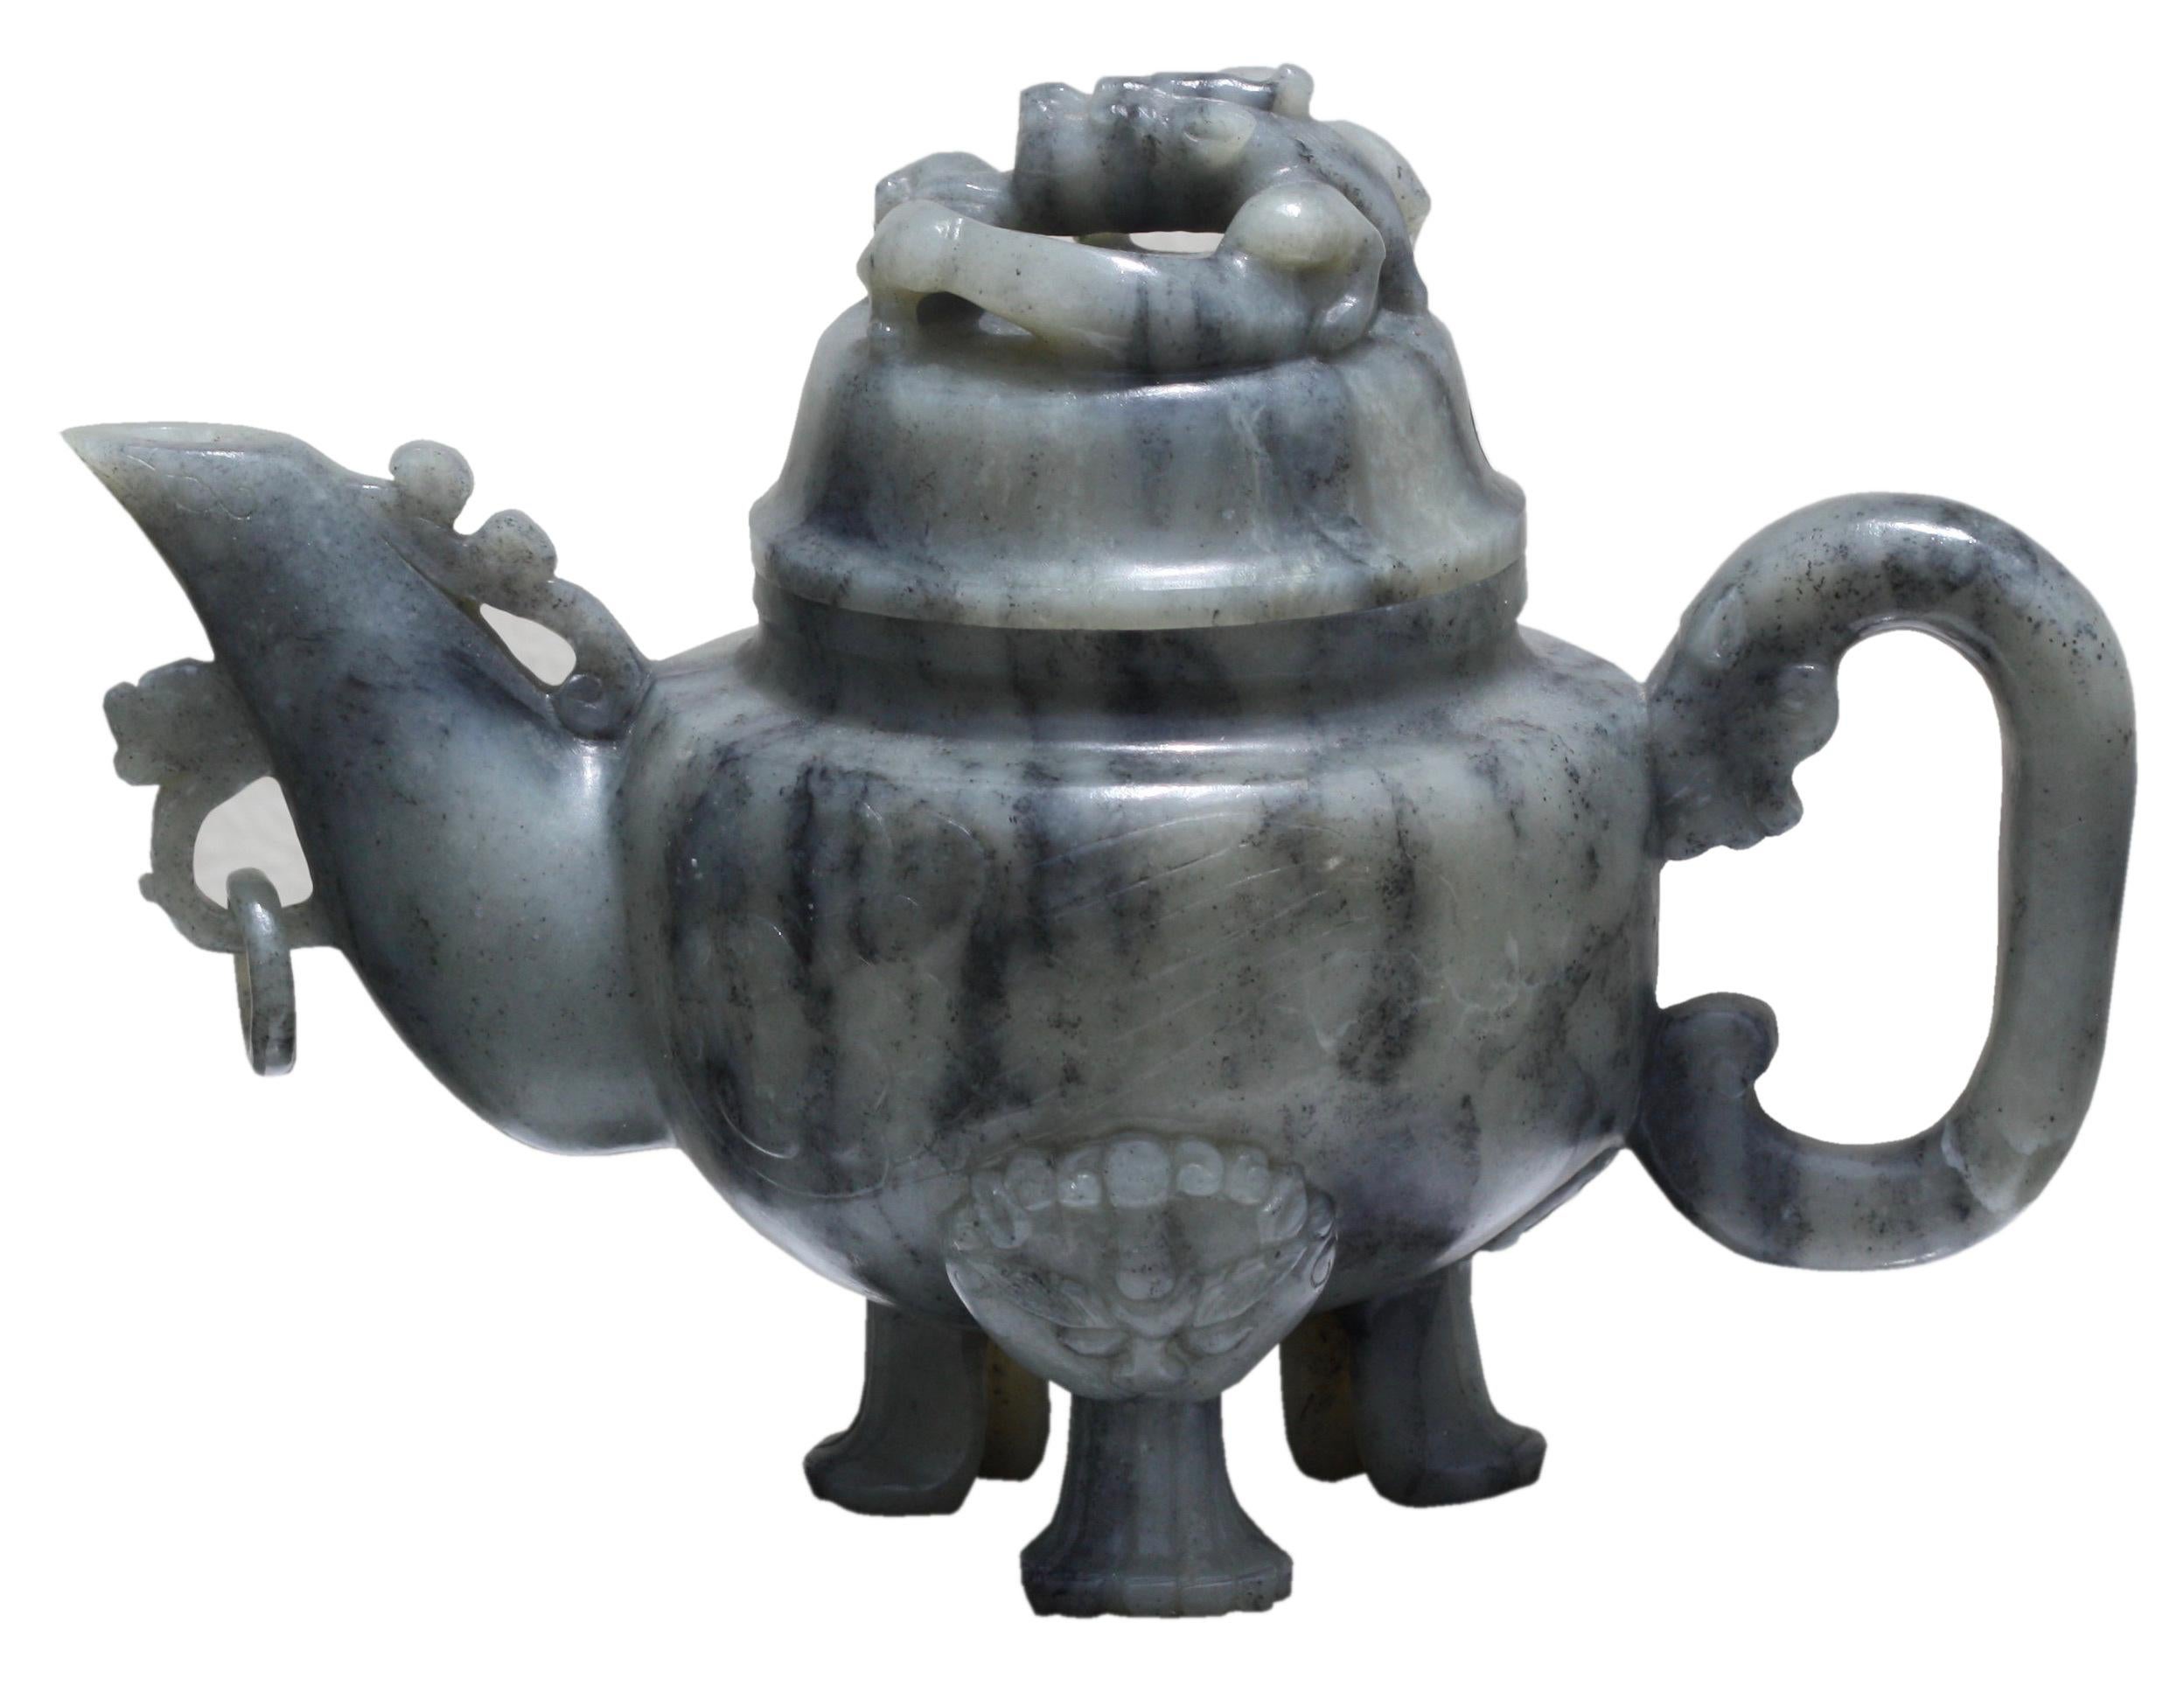 Eine chinesische Jade-Teekanne mit Deckel 
von grauer und schwarzer Farbe, die Oberfläche hochglanzpoliert und in sehr flachem Relief auf der einen Seite mit einem Pflaumenbaum und Felsen und auf der anderen Seite mit einem Felsen beschnitzt, mit